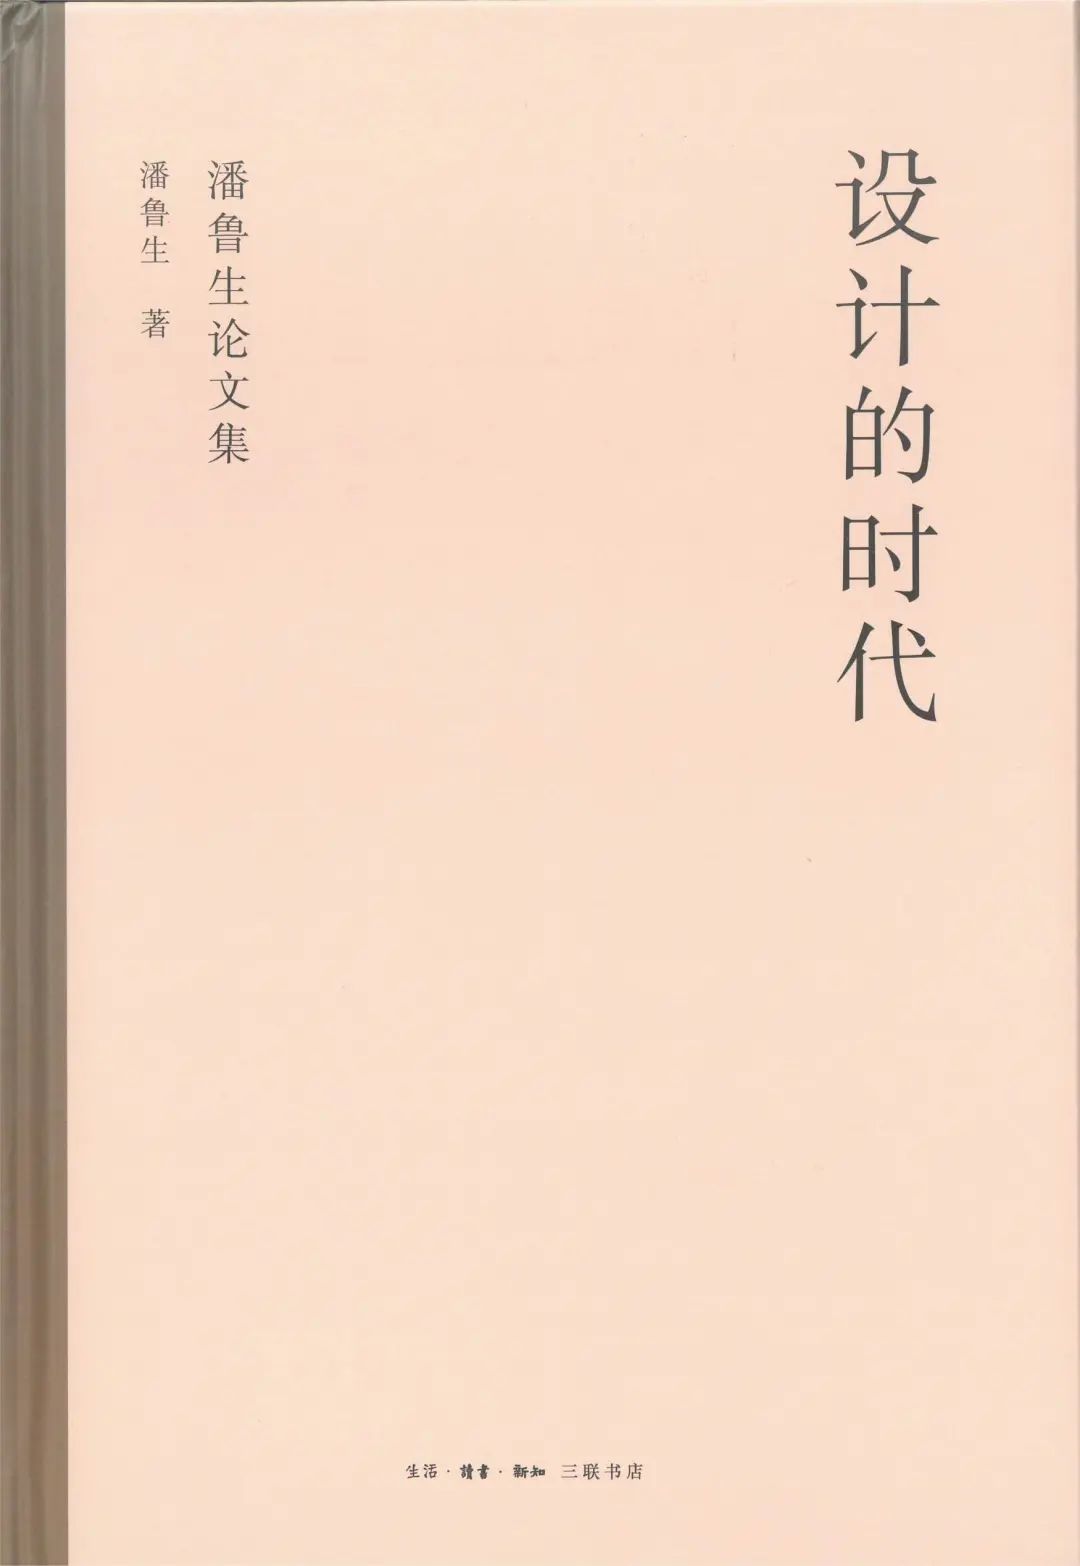 潘鲁生新书《设计的时代》由三联书店出版